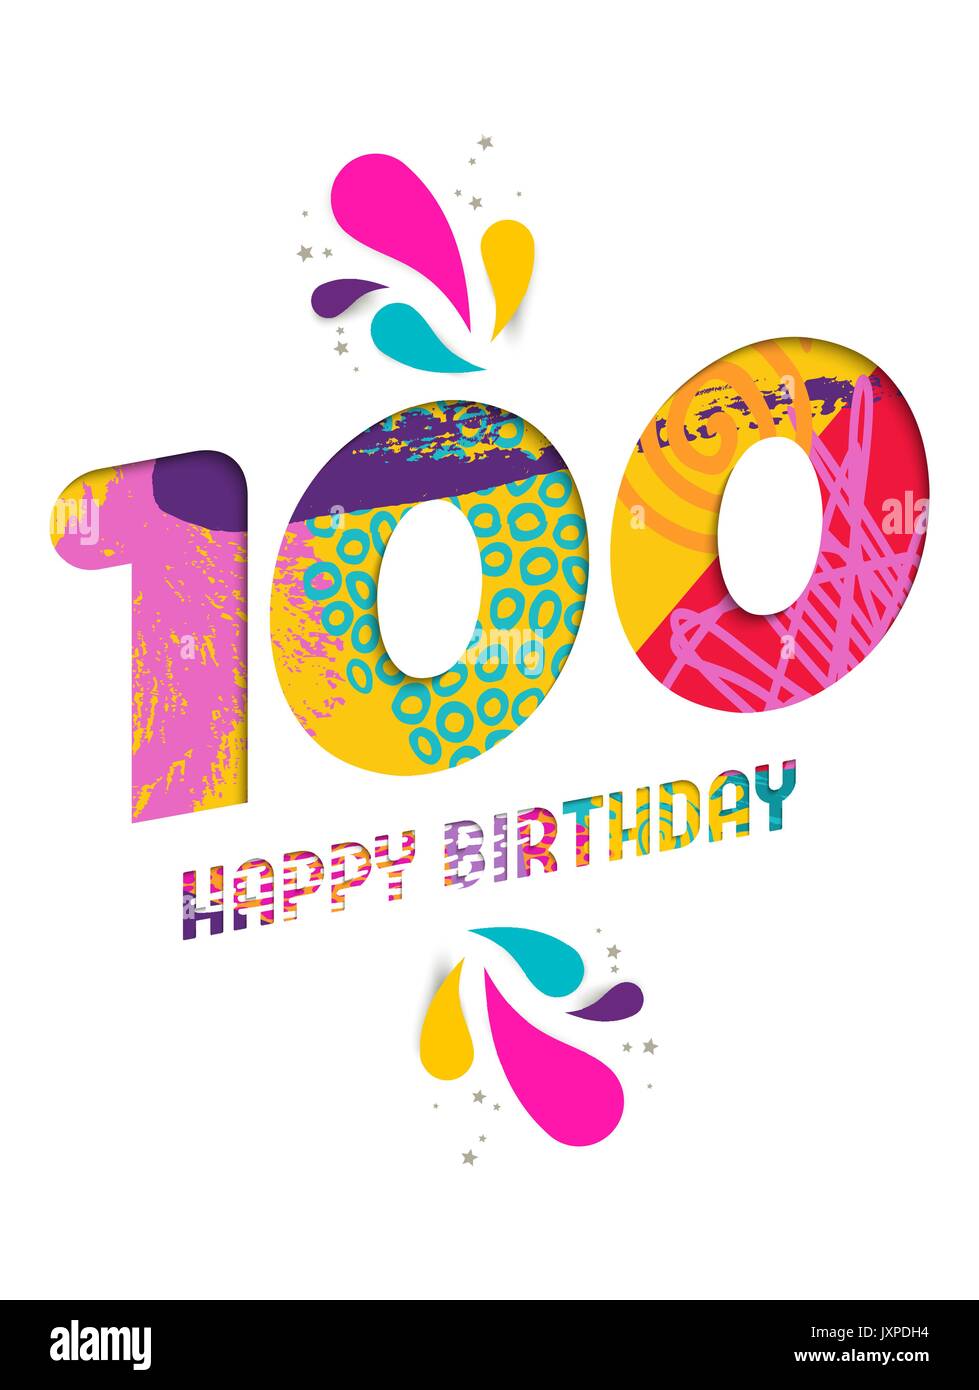 Joyeux anniversaire cent 100 ans, amusant papier coupé numéro et le texte de l'étiquette avec colourful abstract art dessinés à la main, idéal pour un événement spécial, de l'affiche Illustration de Vecteur